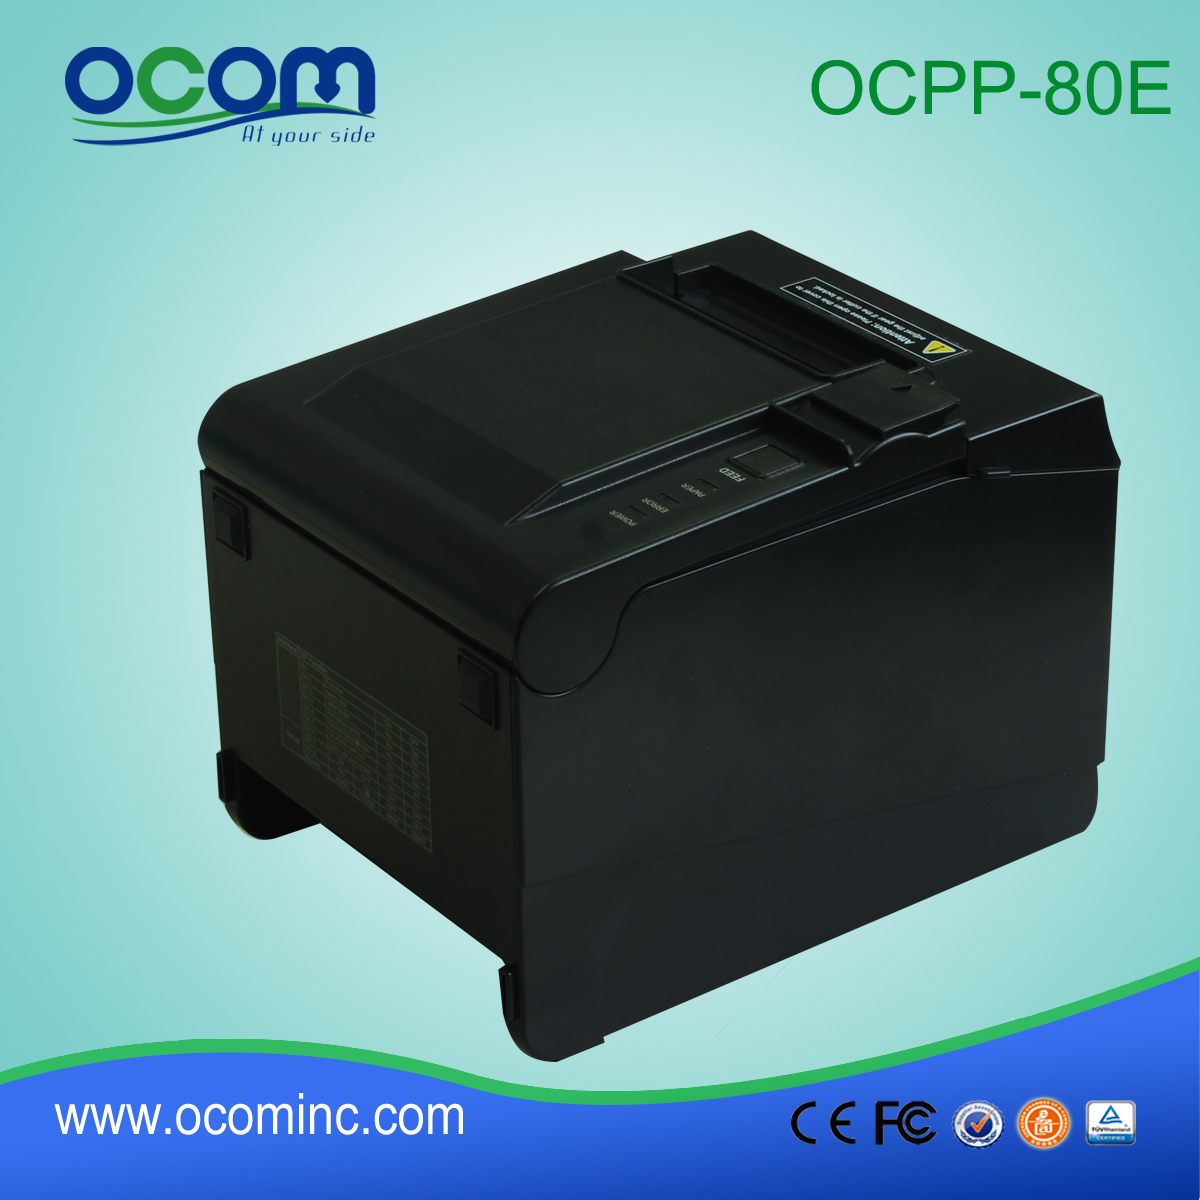 OCPP-80E ---- Chine a fait 80mm POS imprimante de reçus